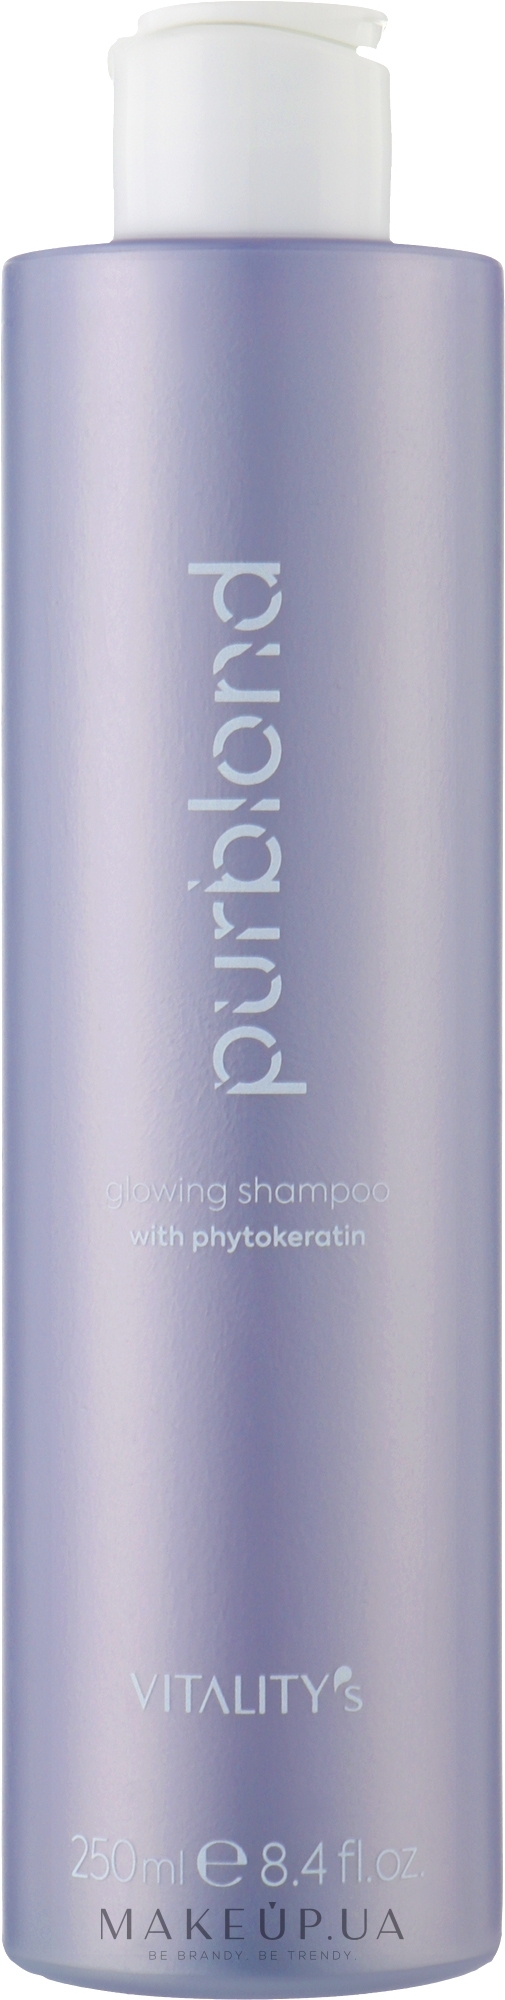 Шампунь для світлого волосся - Vitality's Purblond Glowing Shampoo — фото 250ml